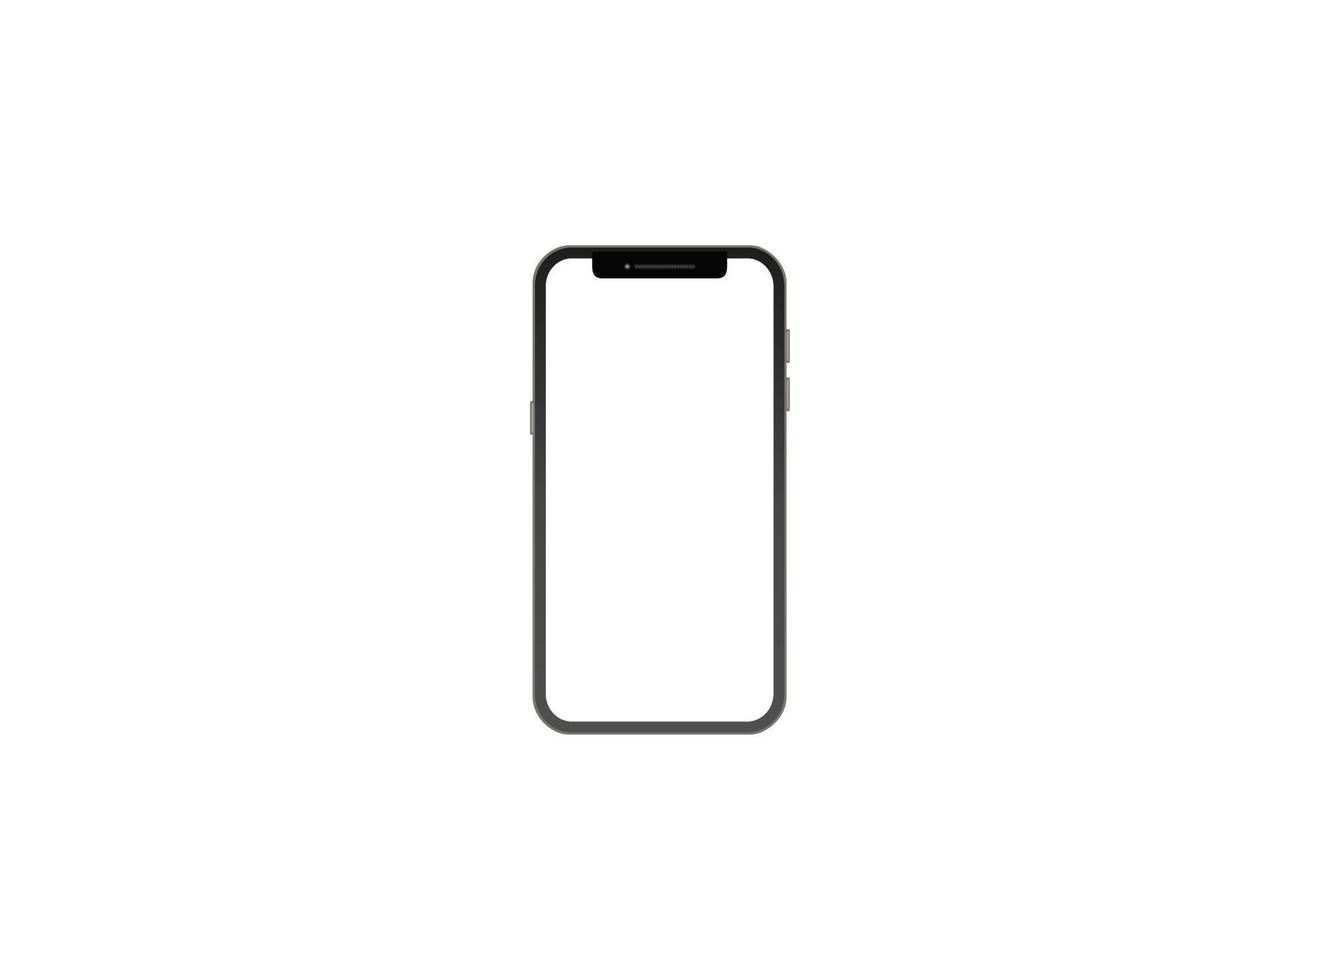 begreppet pekskärm smartphone med tomt gränssnitt. element av gränssnittet på skärmen ikoner och knappar isolerad på vit bakgrund. mobiltelefon trådlös kommunikation. vektor 3d illustration.